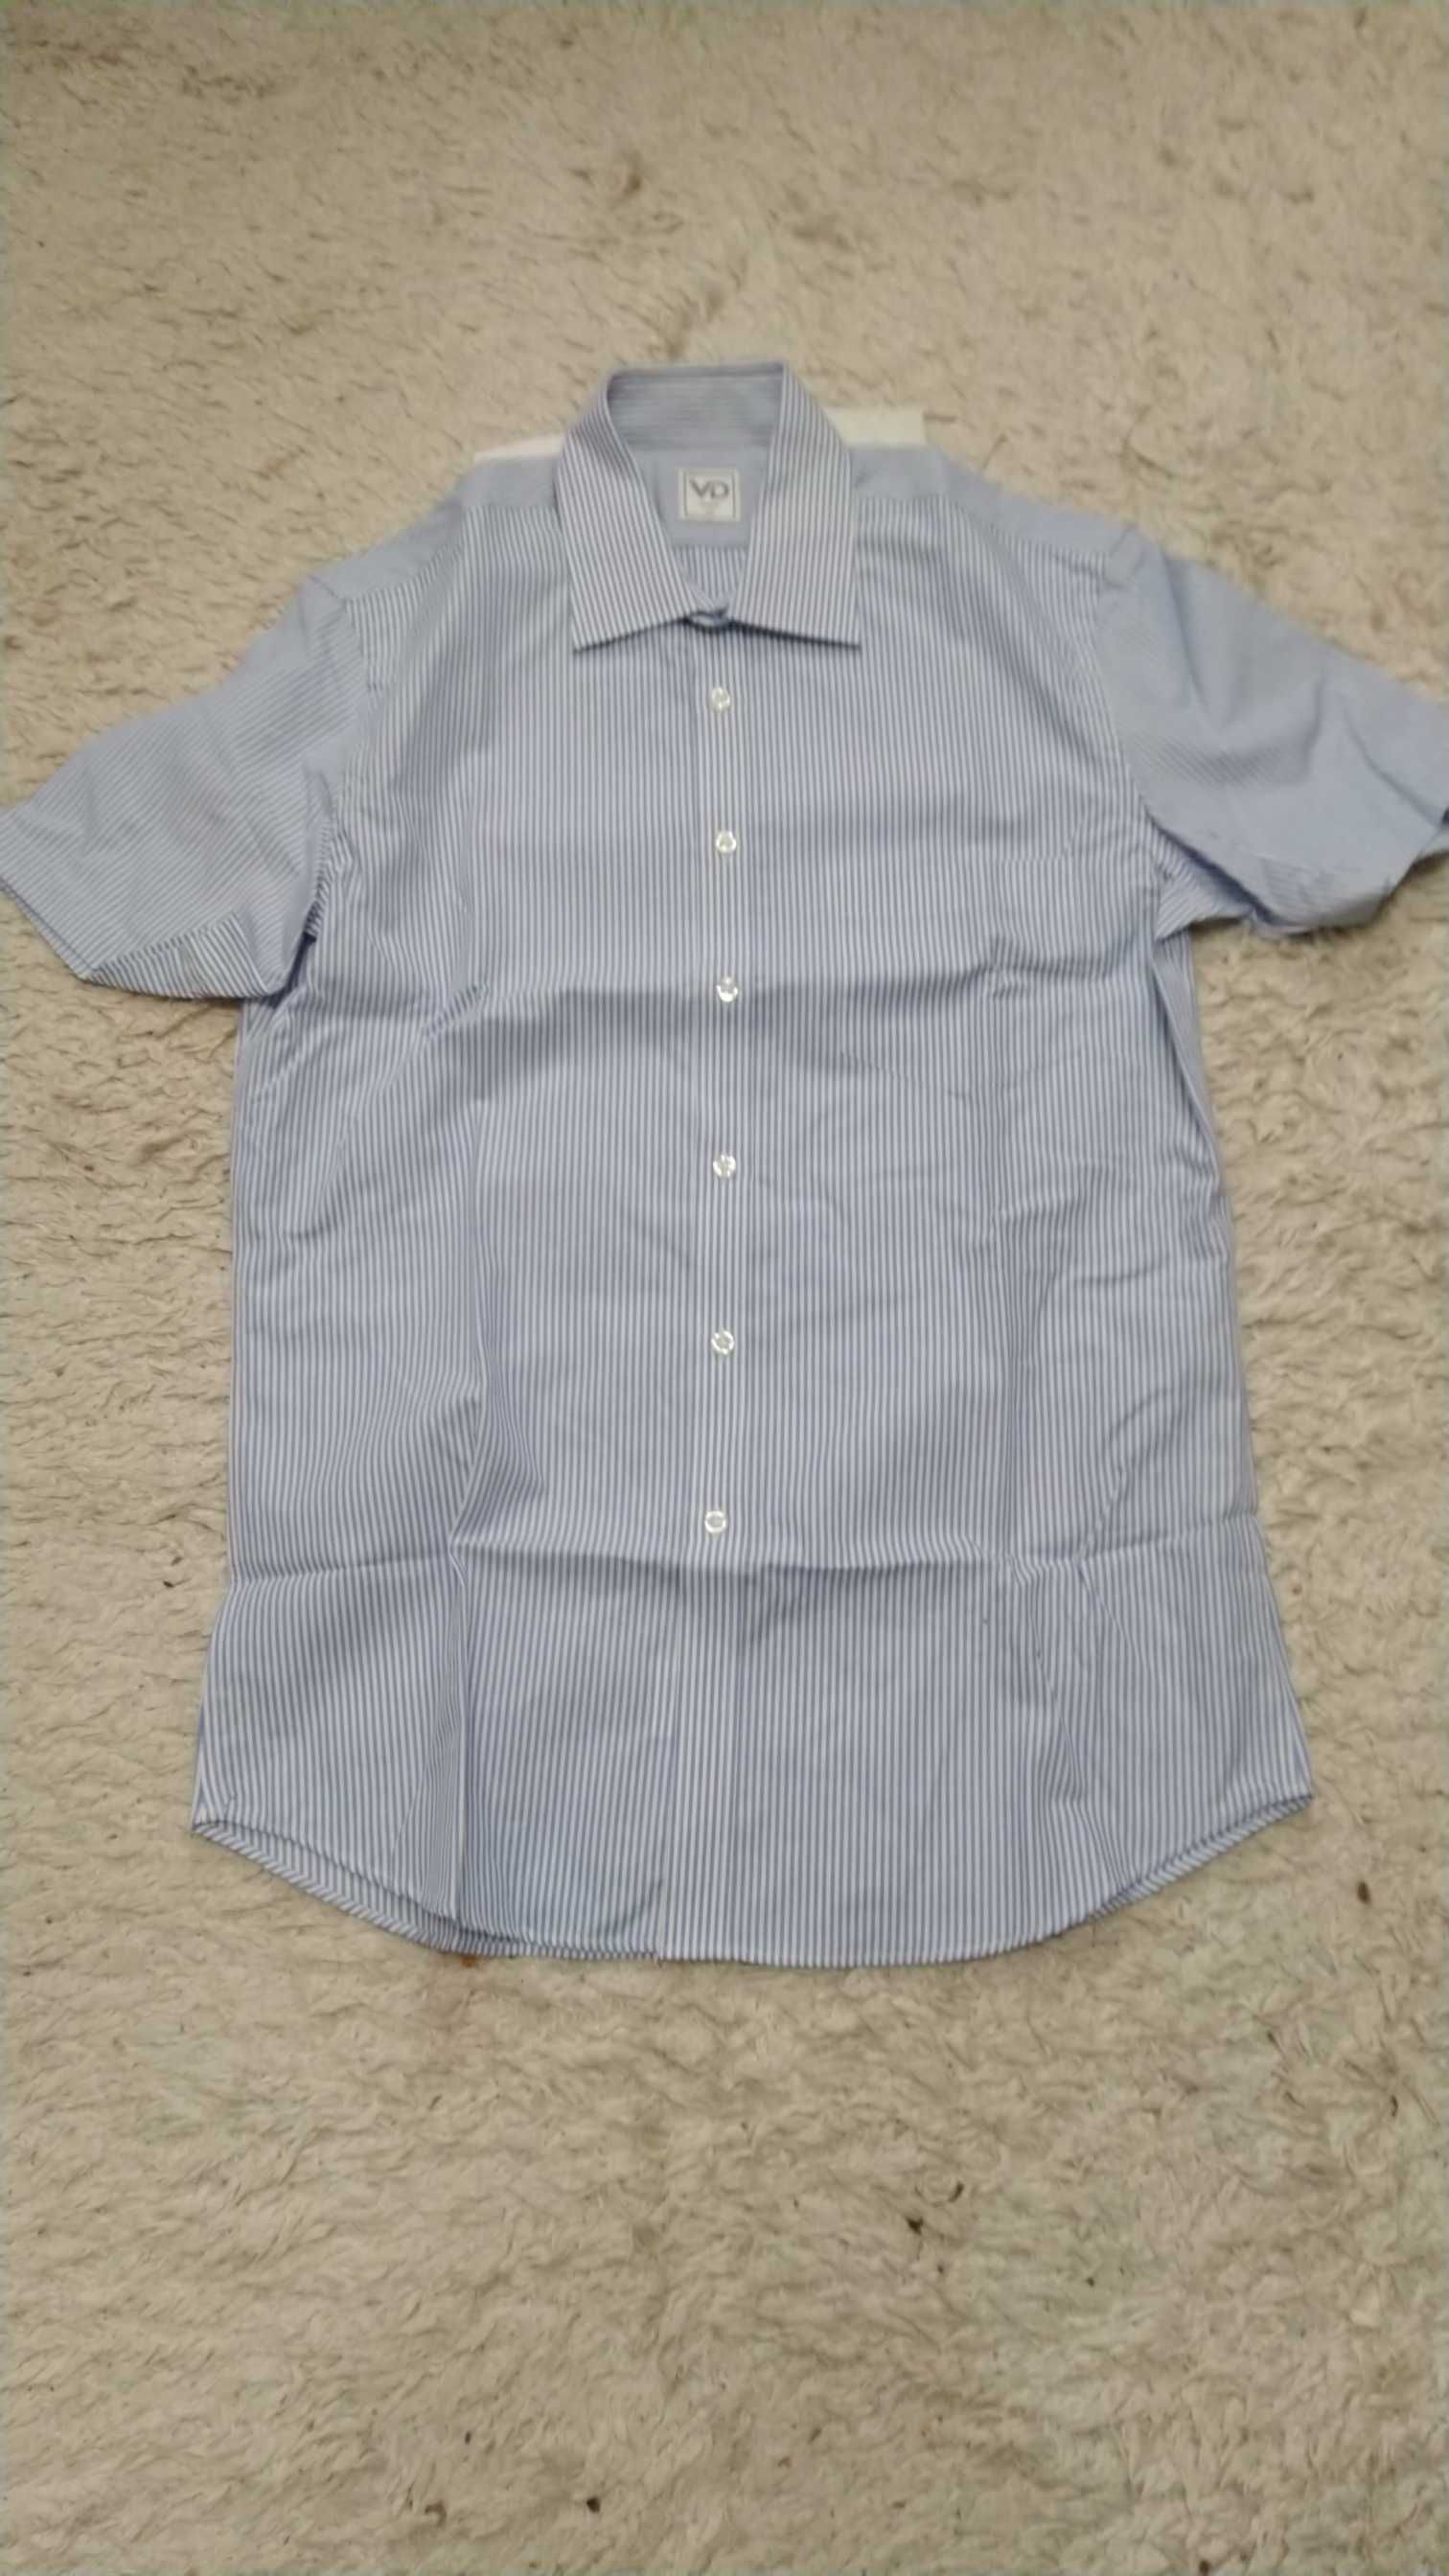 Рубашка VD one с коротким рукавом белая с синей полоской, размер 40